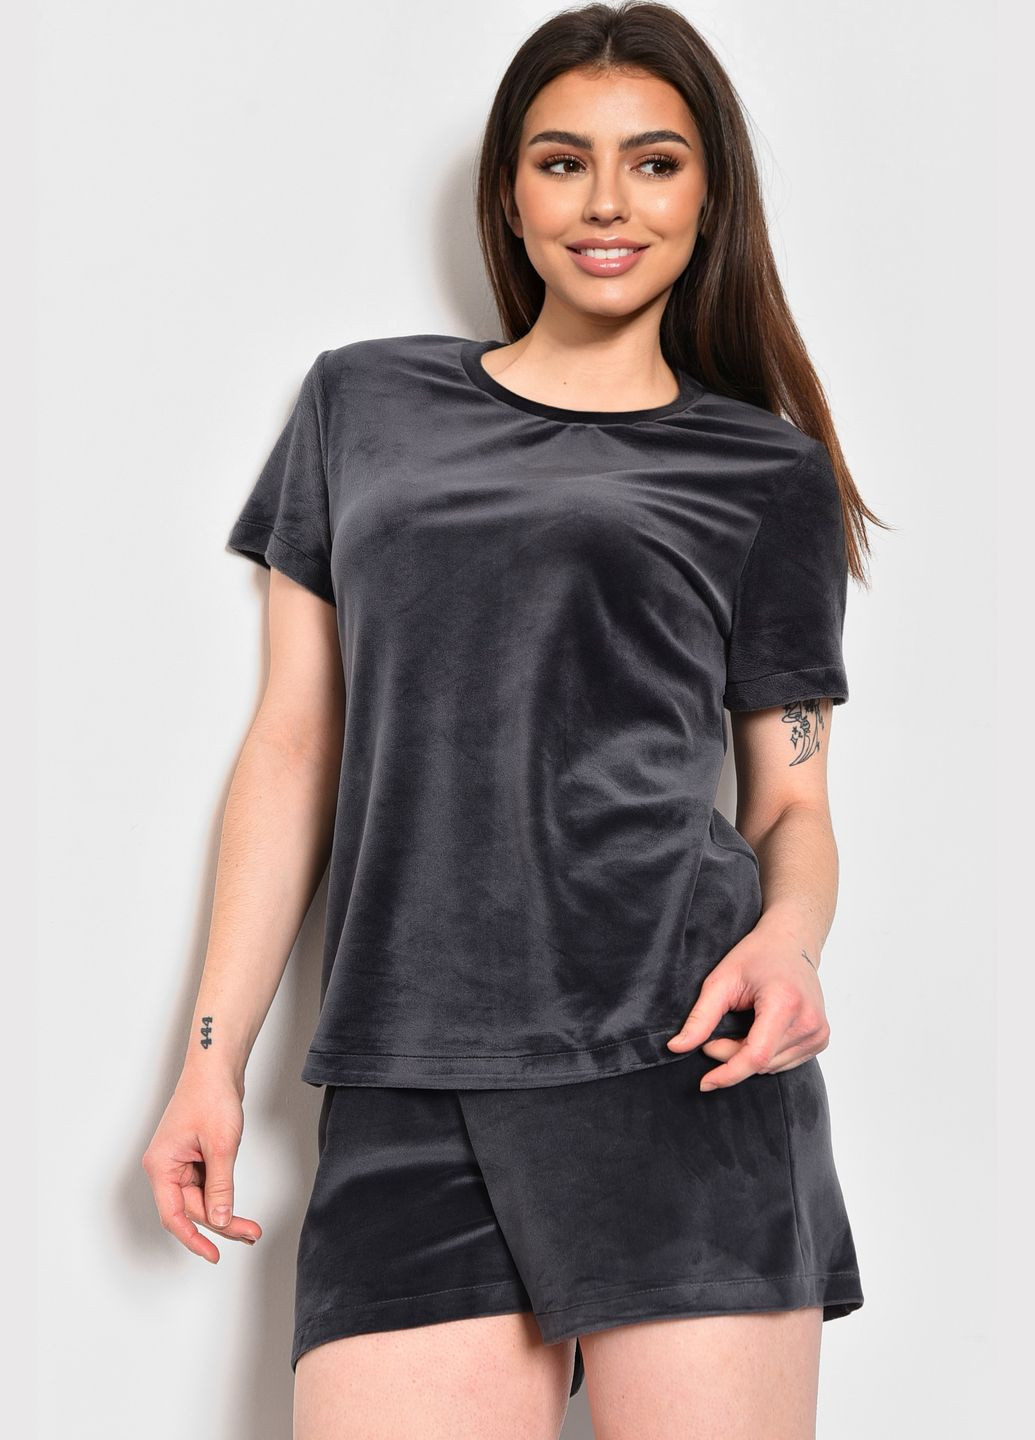 Темно-серая всесезон пижама женская велюровая темно-серого цвета футболка + шорты Let's Shop